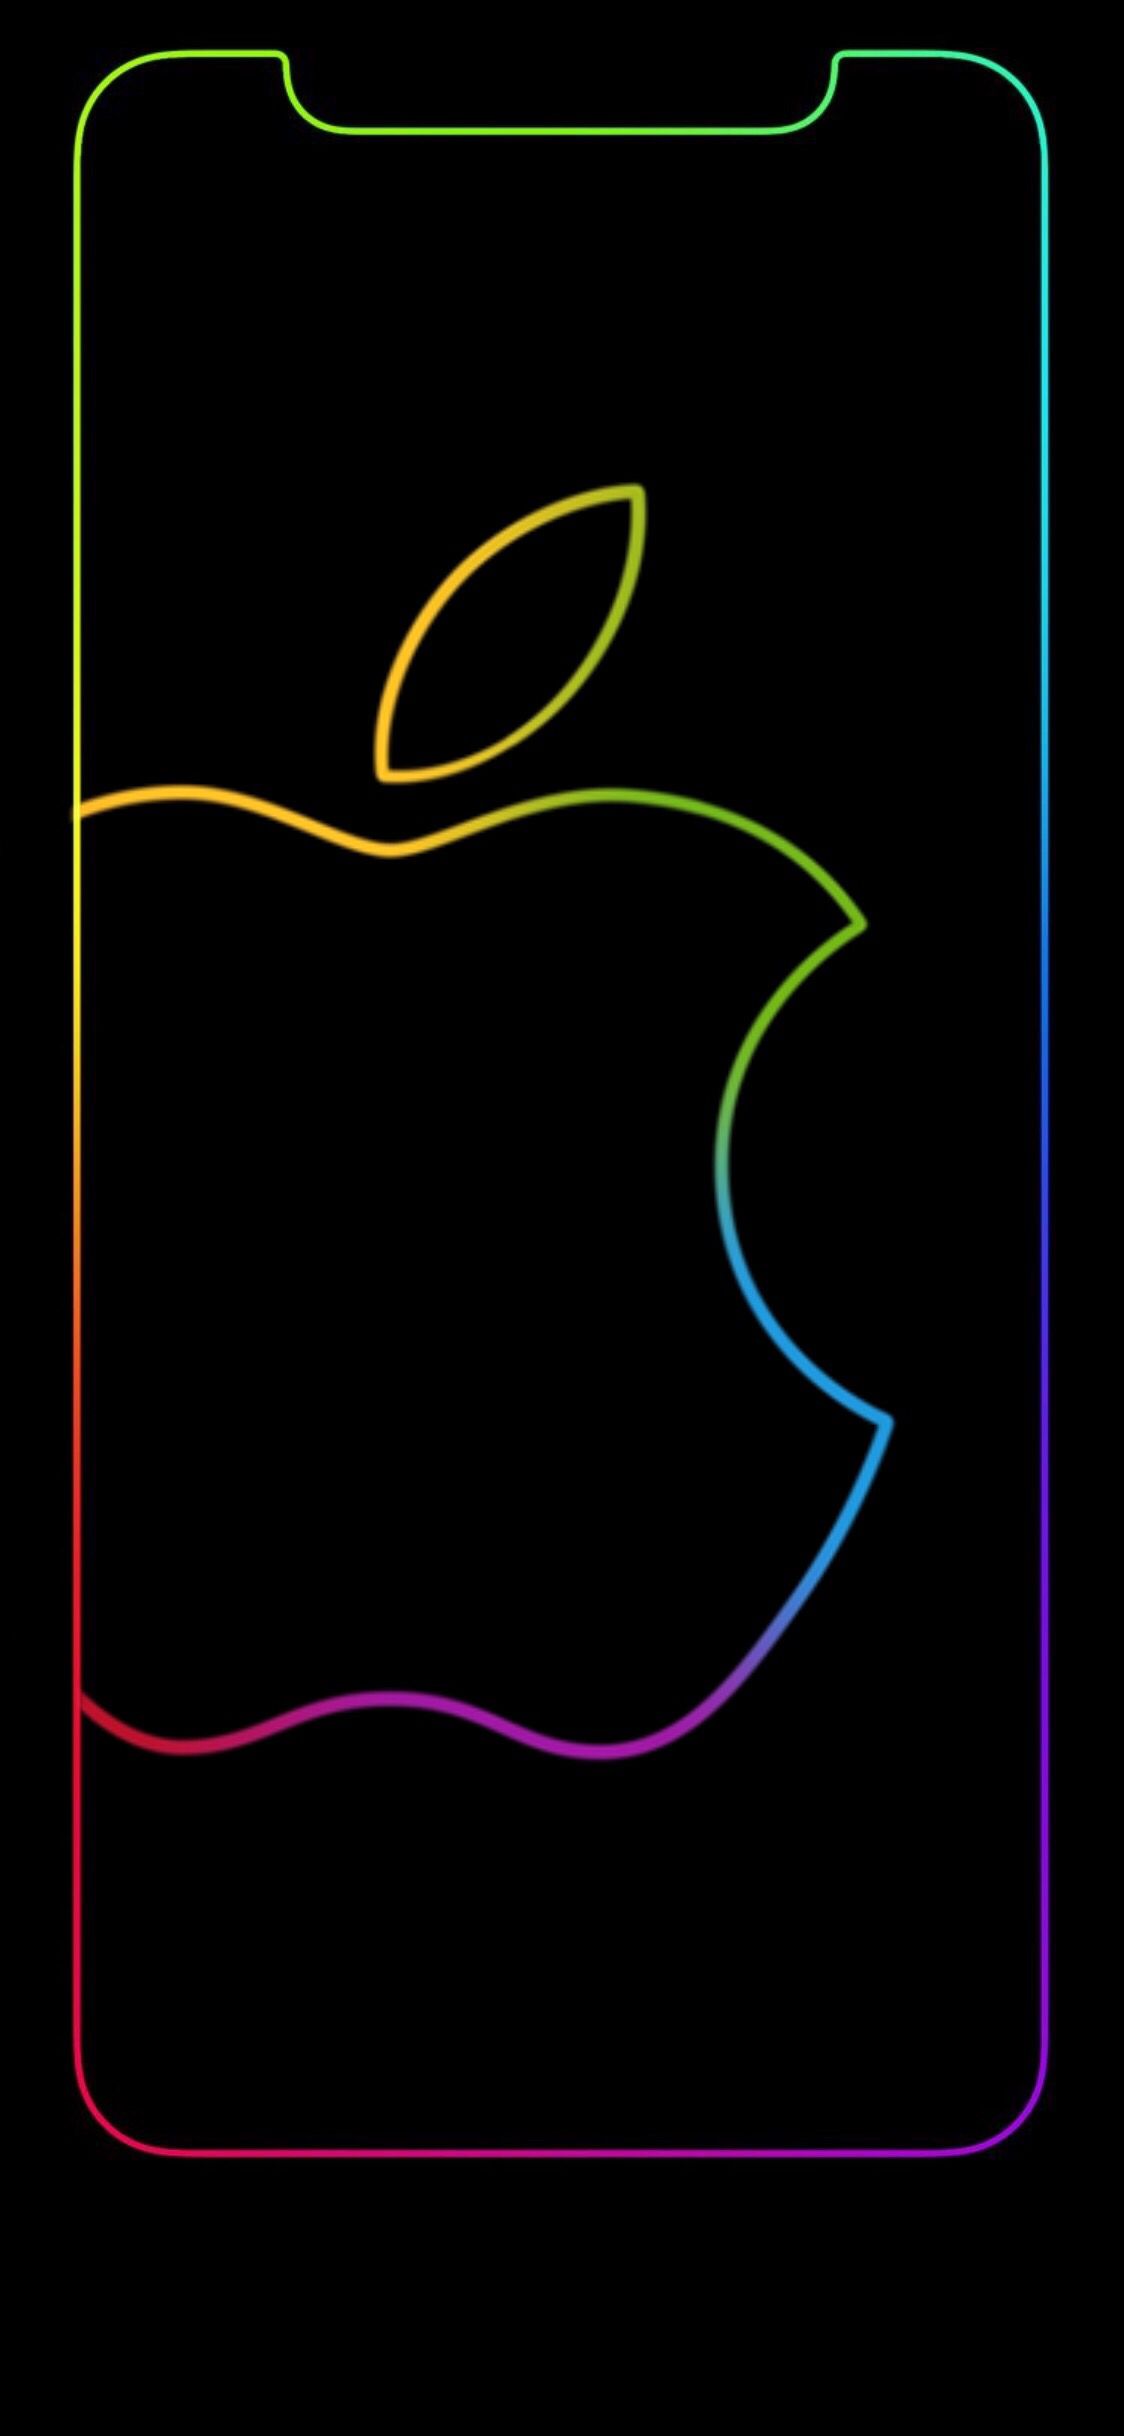 iPhone x Wallpaper frame addon ideas. wallpaper, apple wallpaper, iphone wallpaper